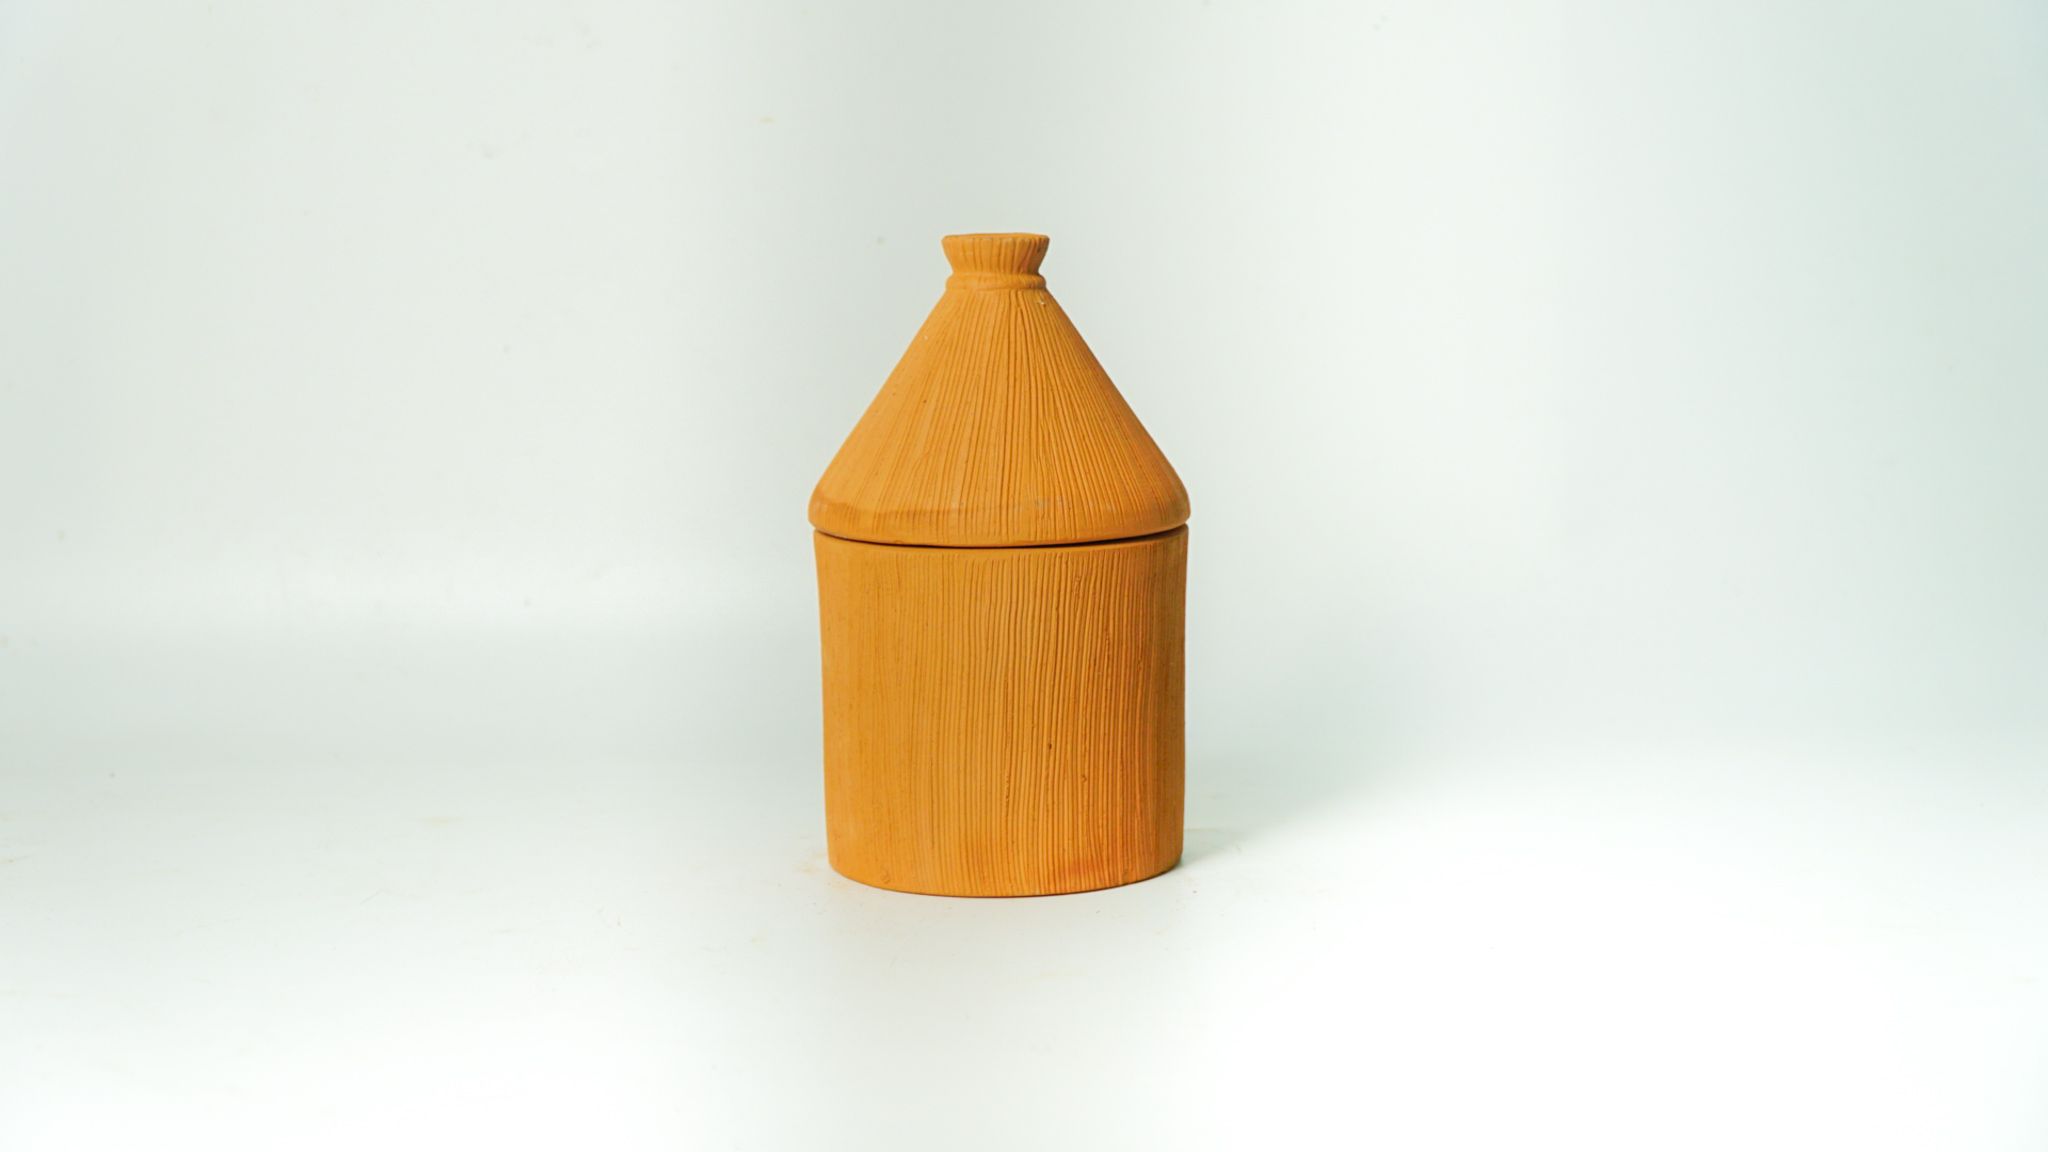  Hũ Đất Nung Handmade Có Nắp / Terra Cotta Jars With Lid - HD12 